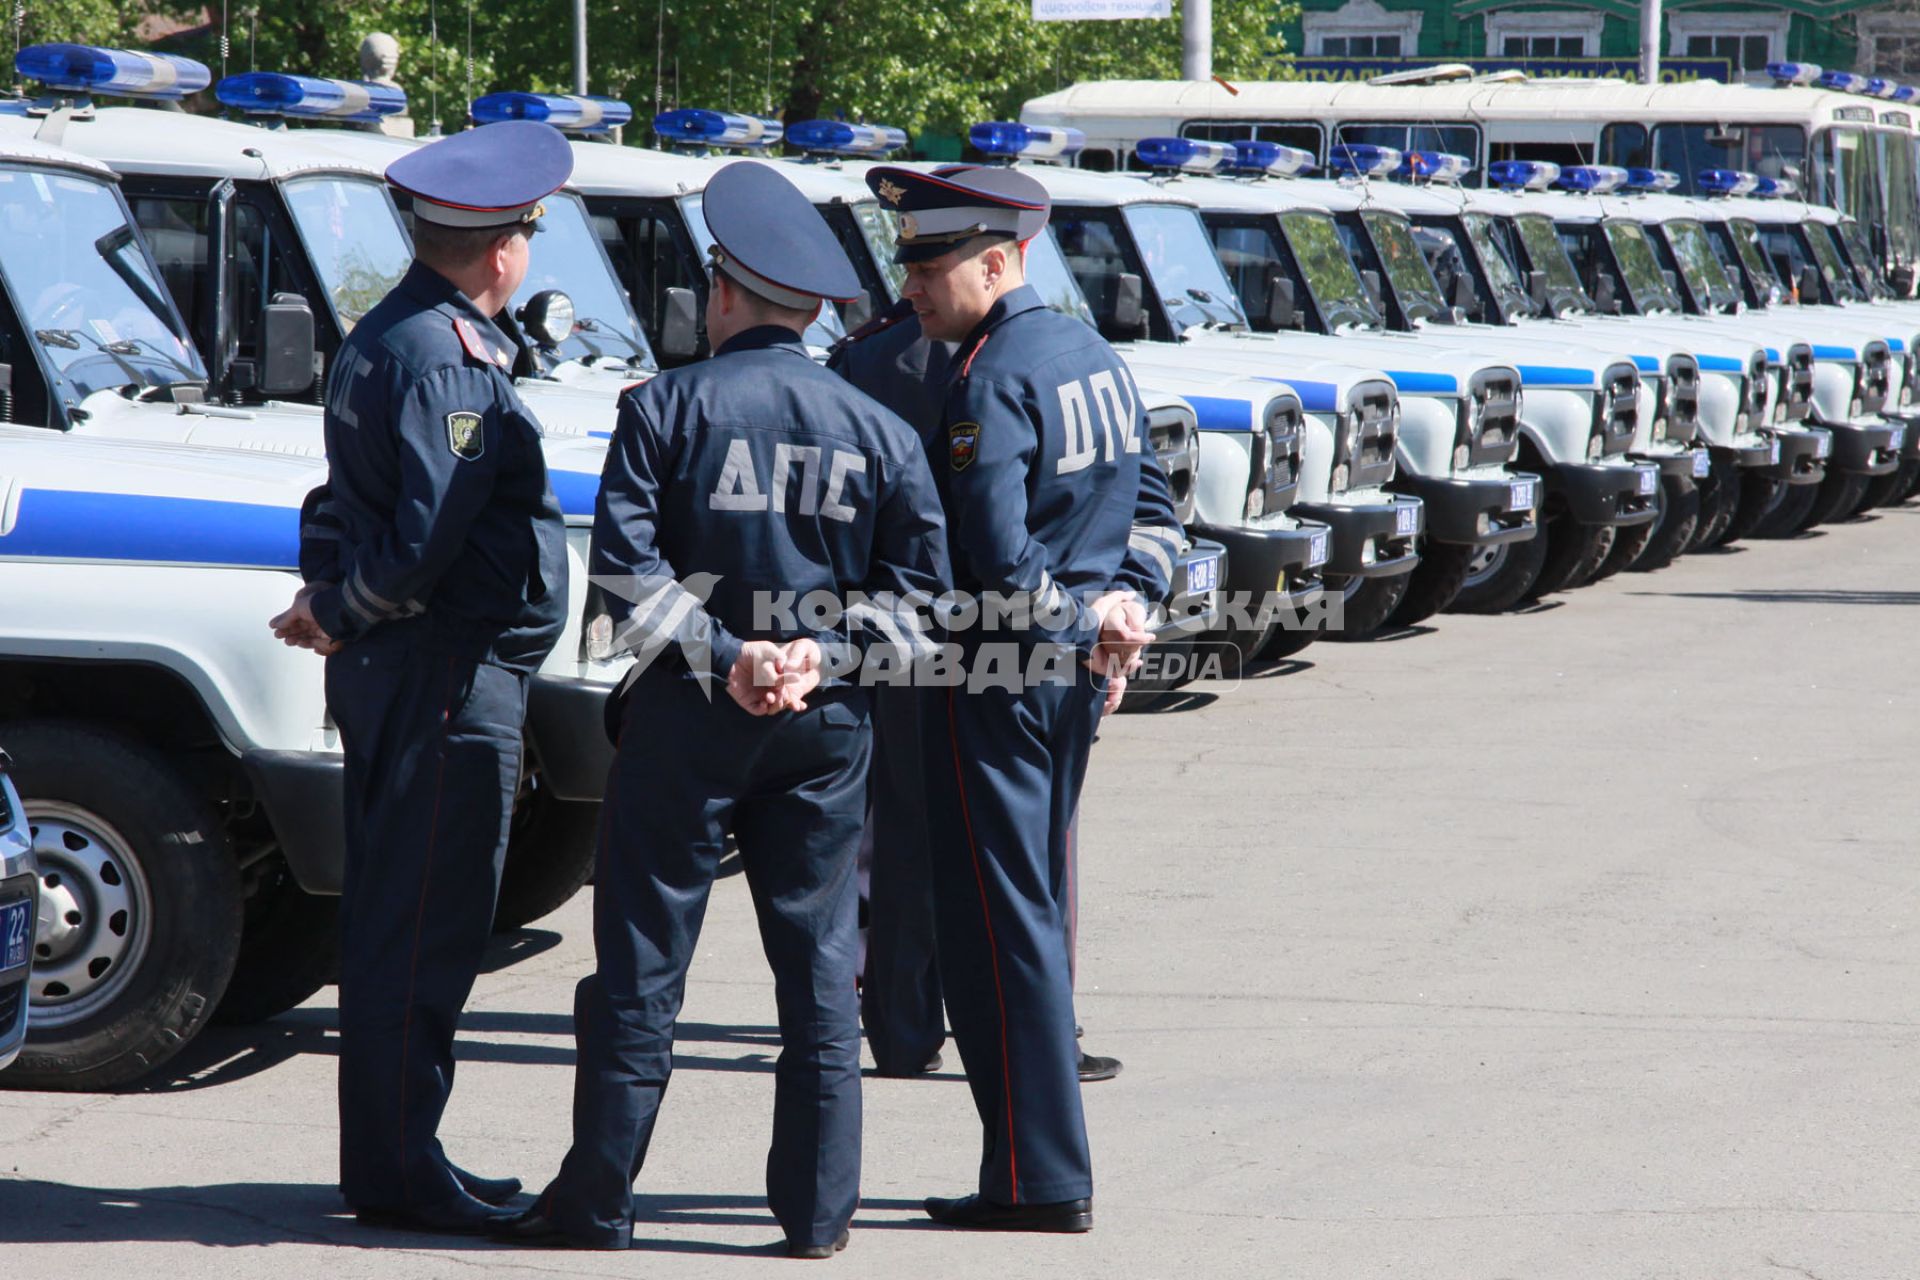 Открытый общегородской развод полицейских нарядов. Сотрудники ДПС на фоне большого количества служебных полицейских автомобилей УАЗ.